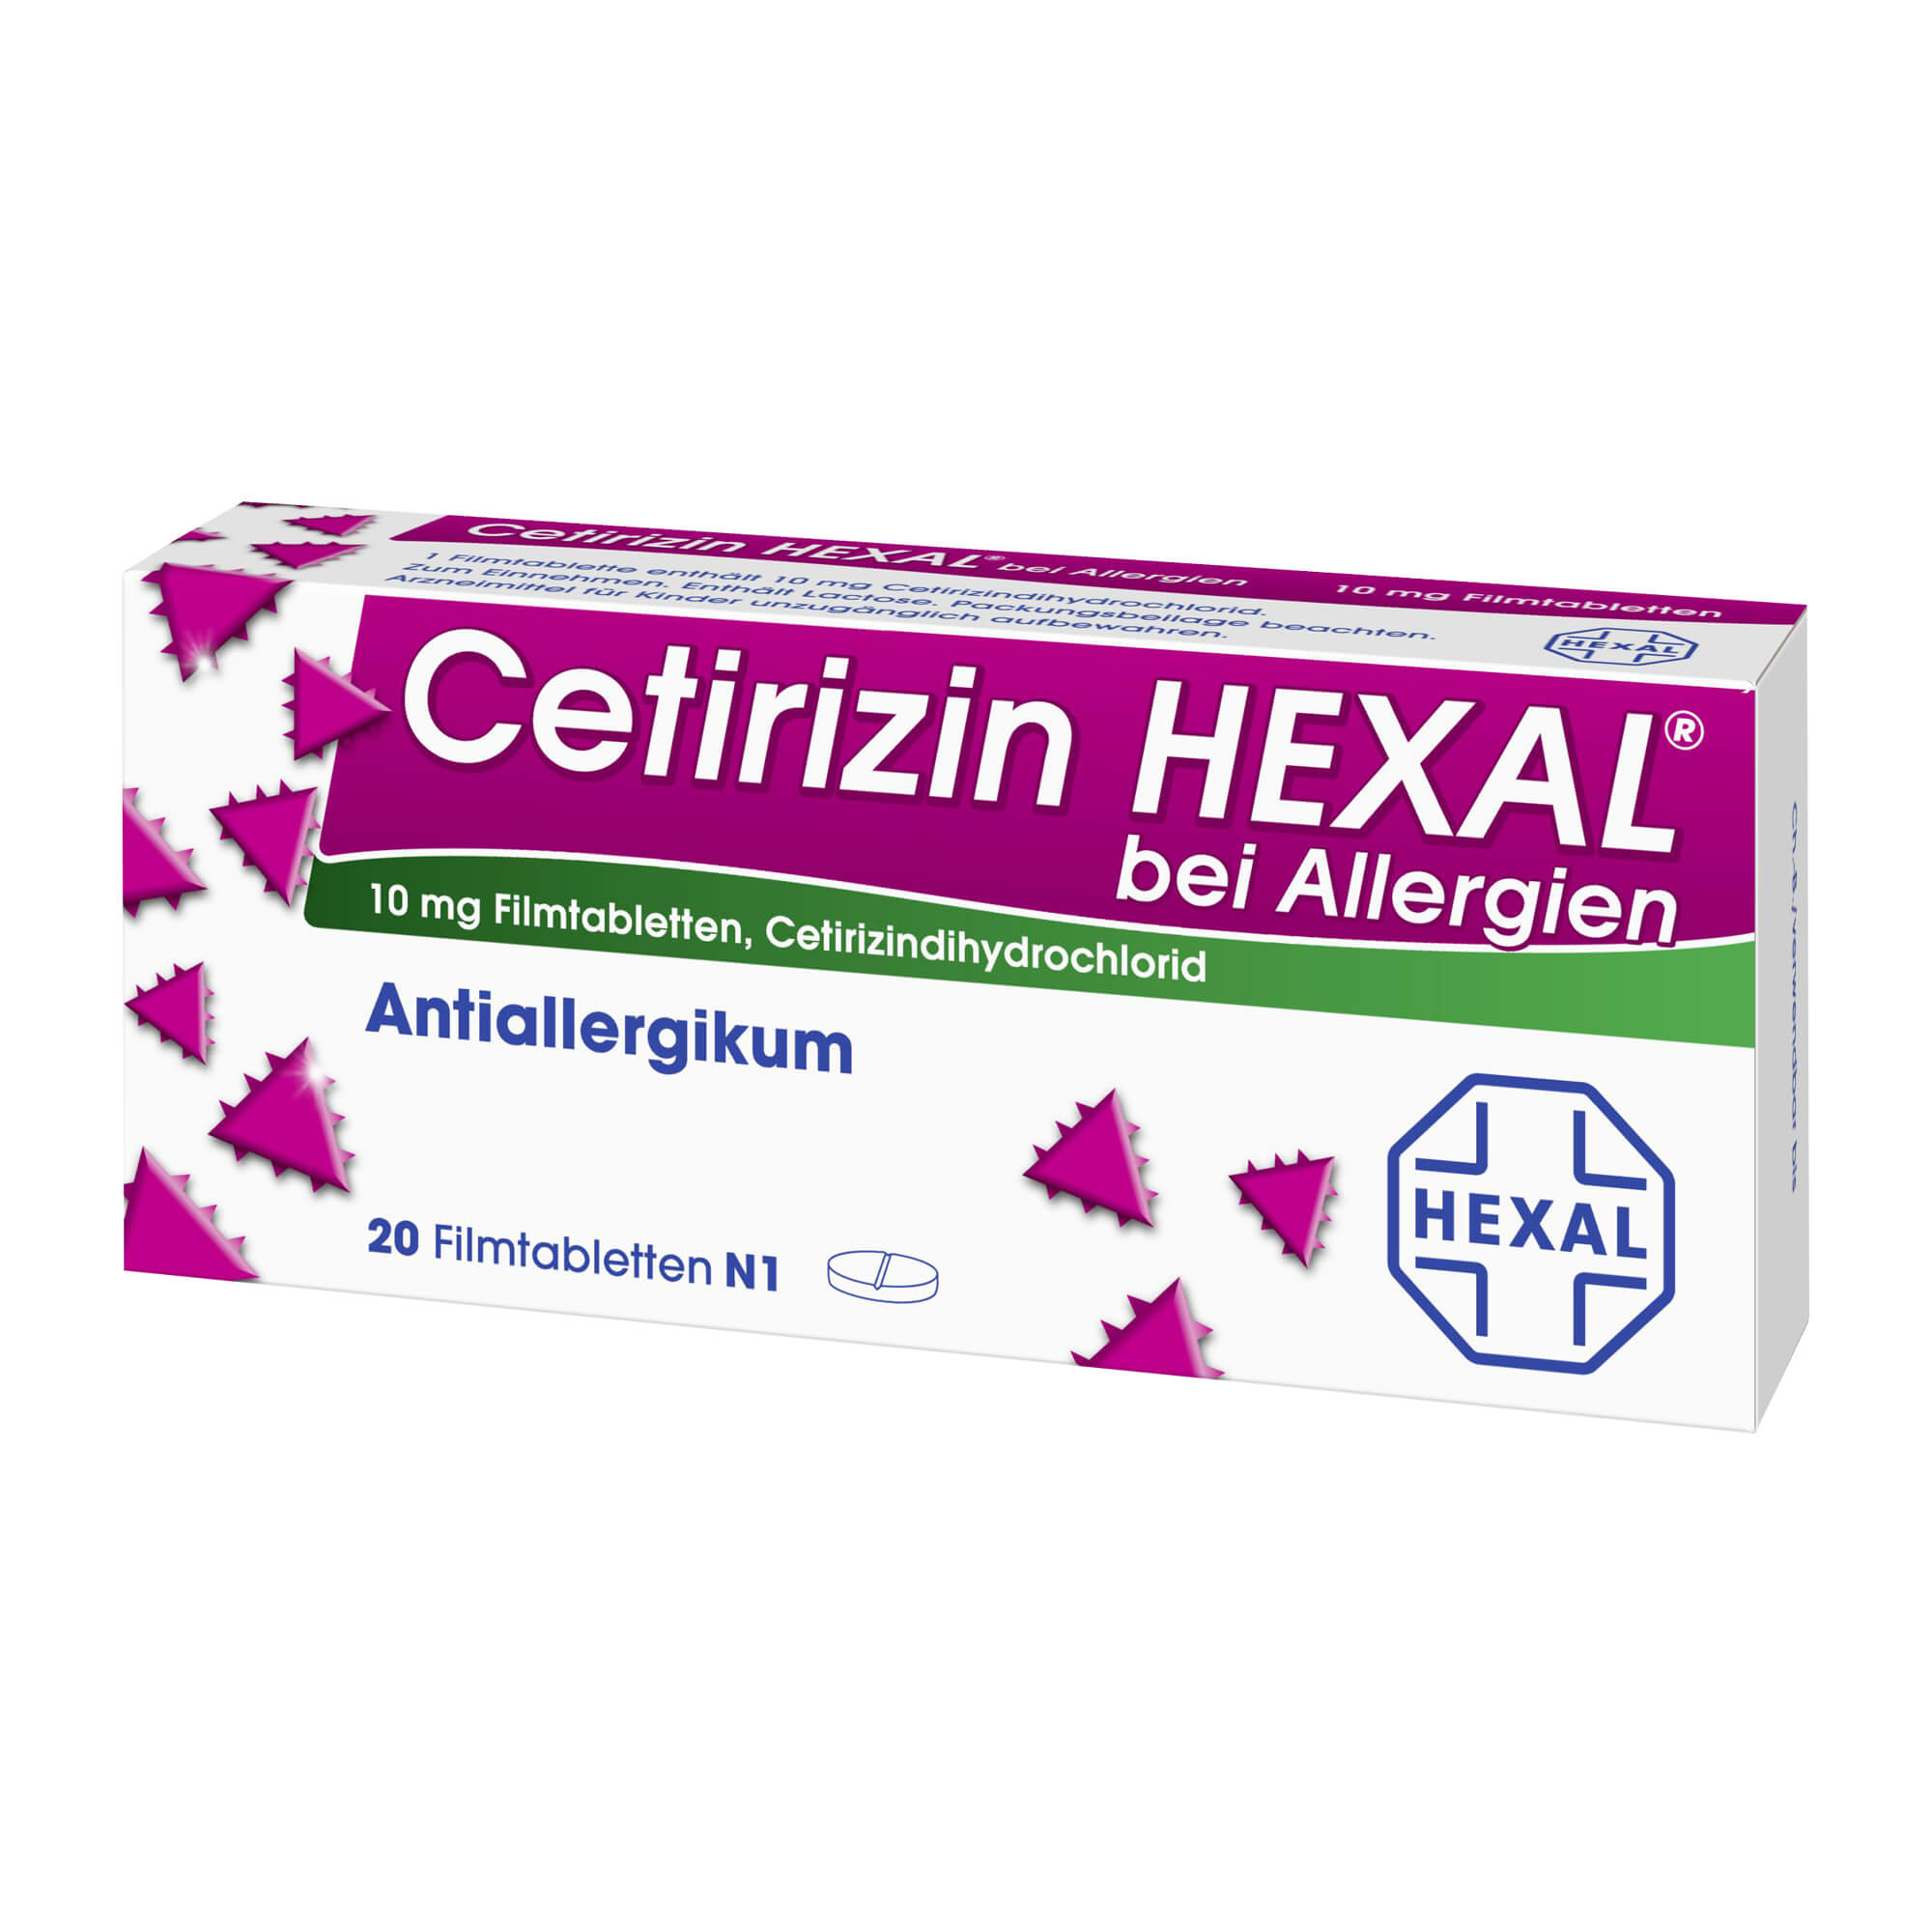 Antiallergikum ab 6 Jahren. Lindert schnell und effektiv allergische Symptome bei Urtikaria oder allergischer Rhinitis.